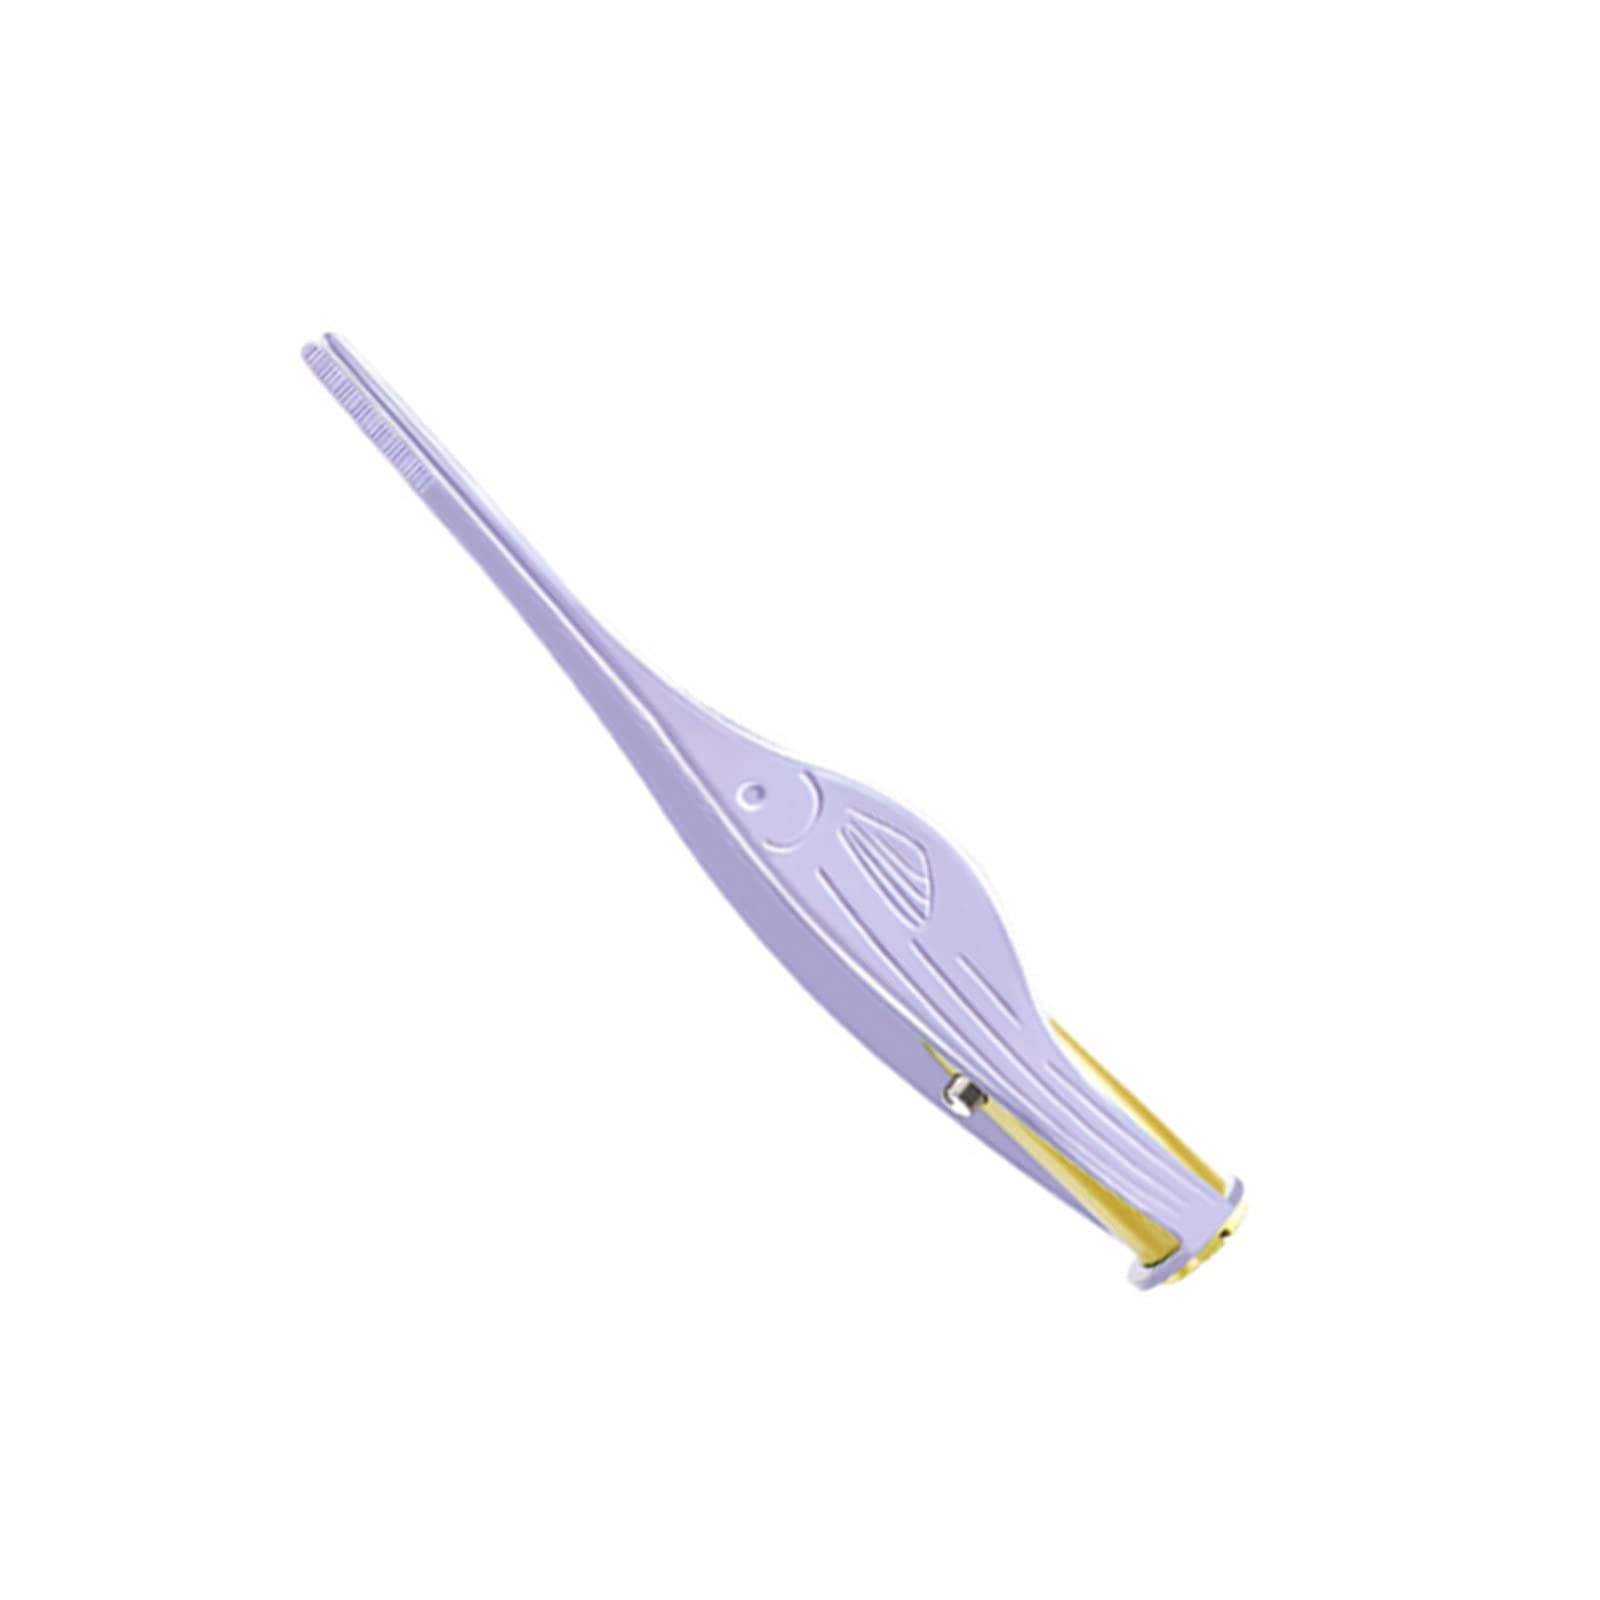 RAYFFSFDC LEDライト付き耳かき ピンセットローズゴールド 耳掃除 子供用 極細先端 ステンレス製 ピンセットタイプ ミミ光棒 はっきり見える (パープル)